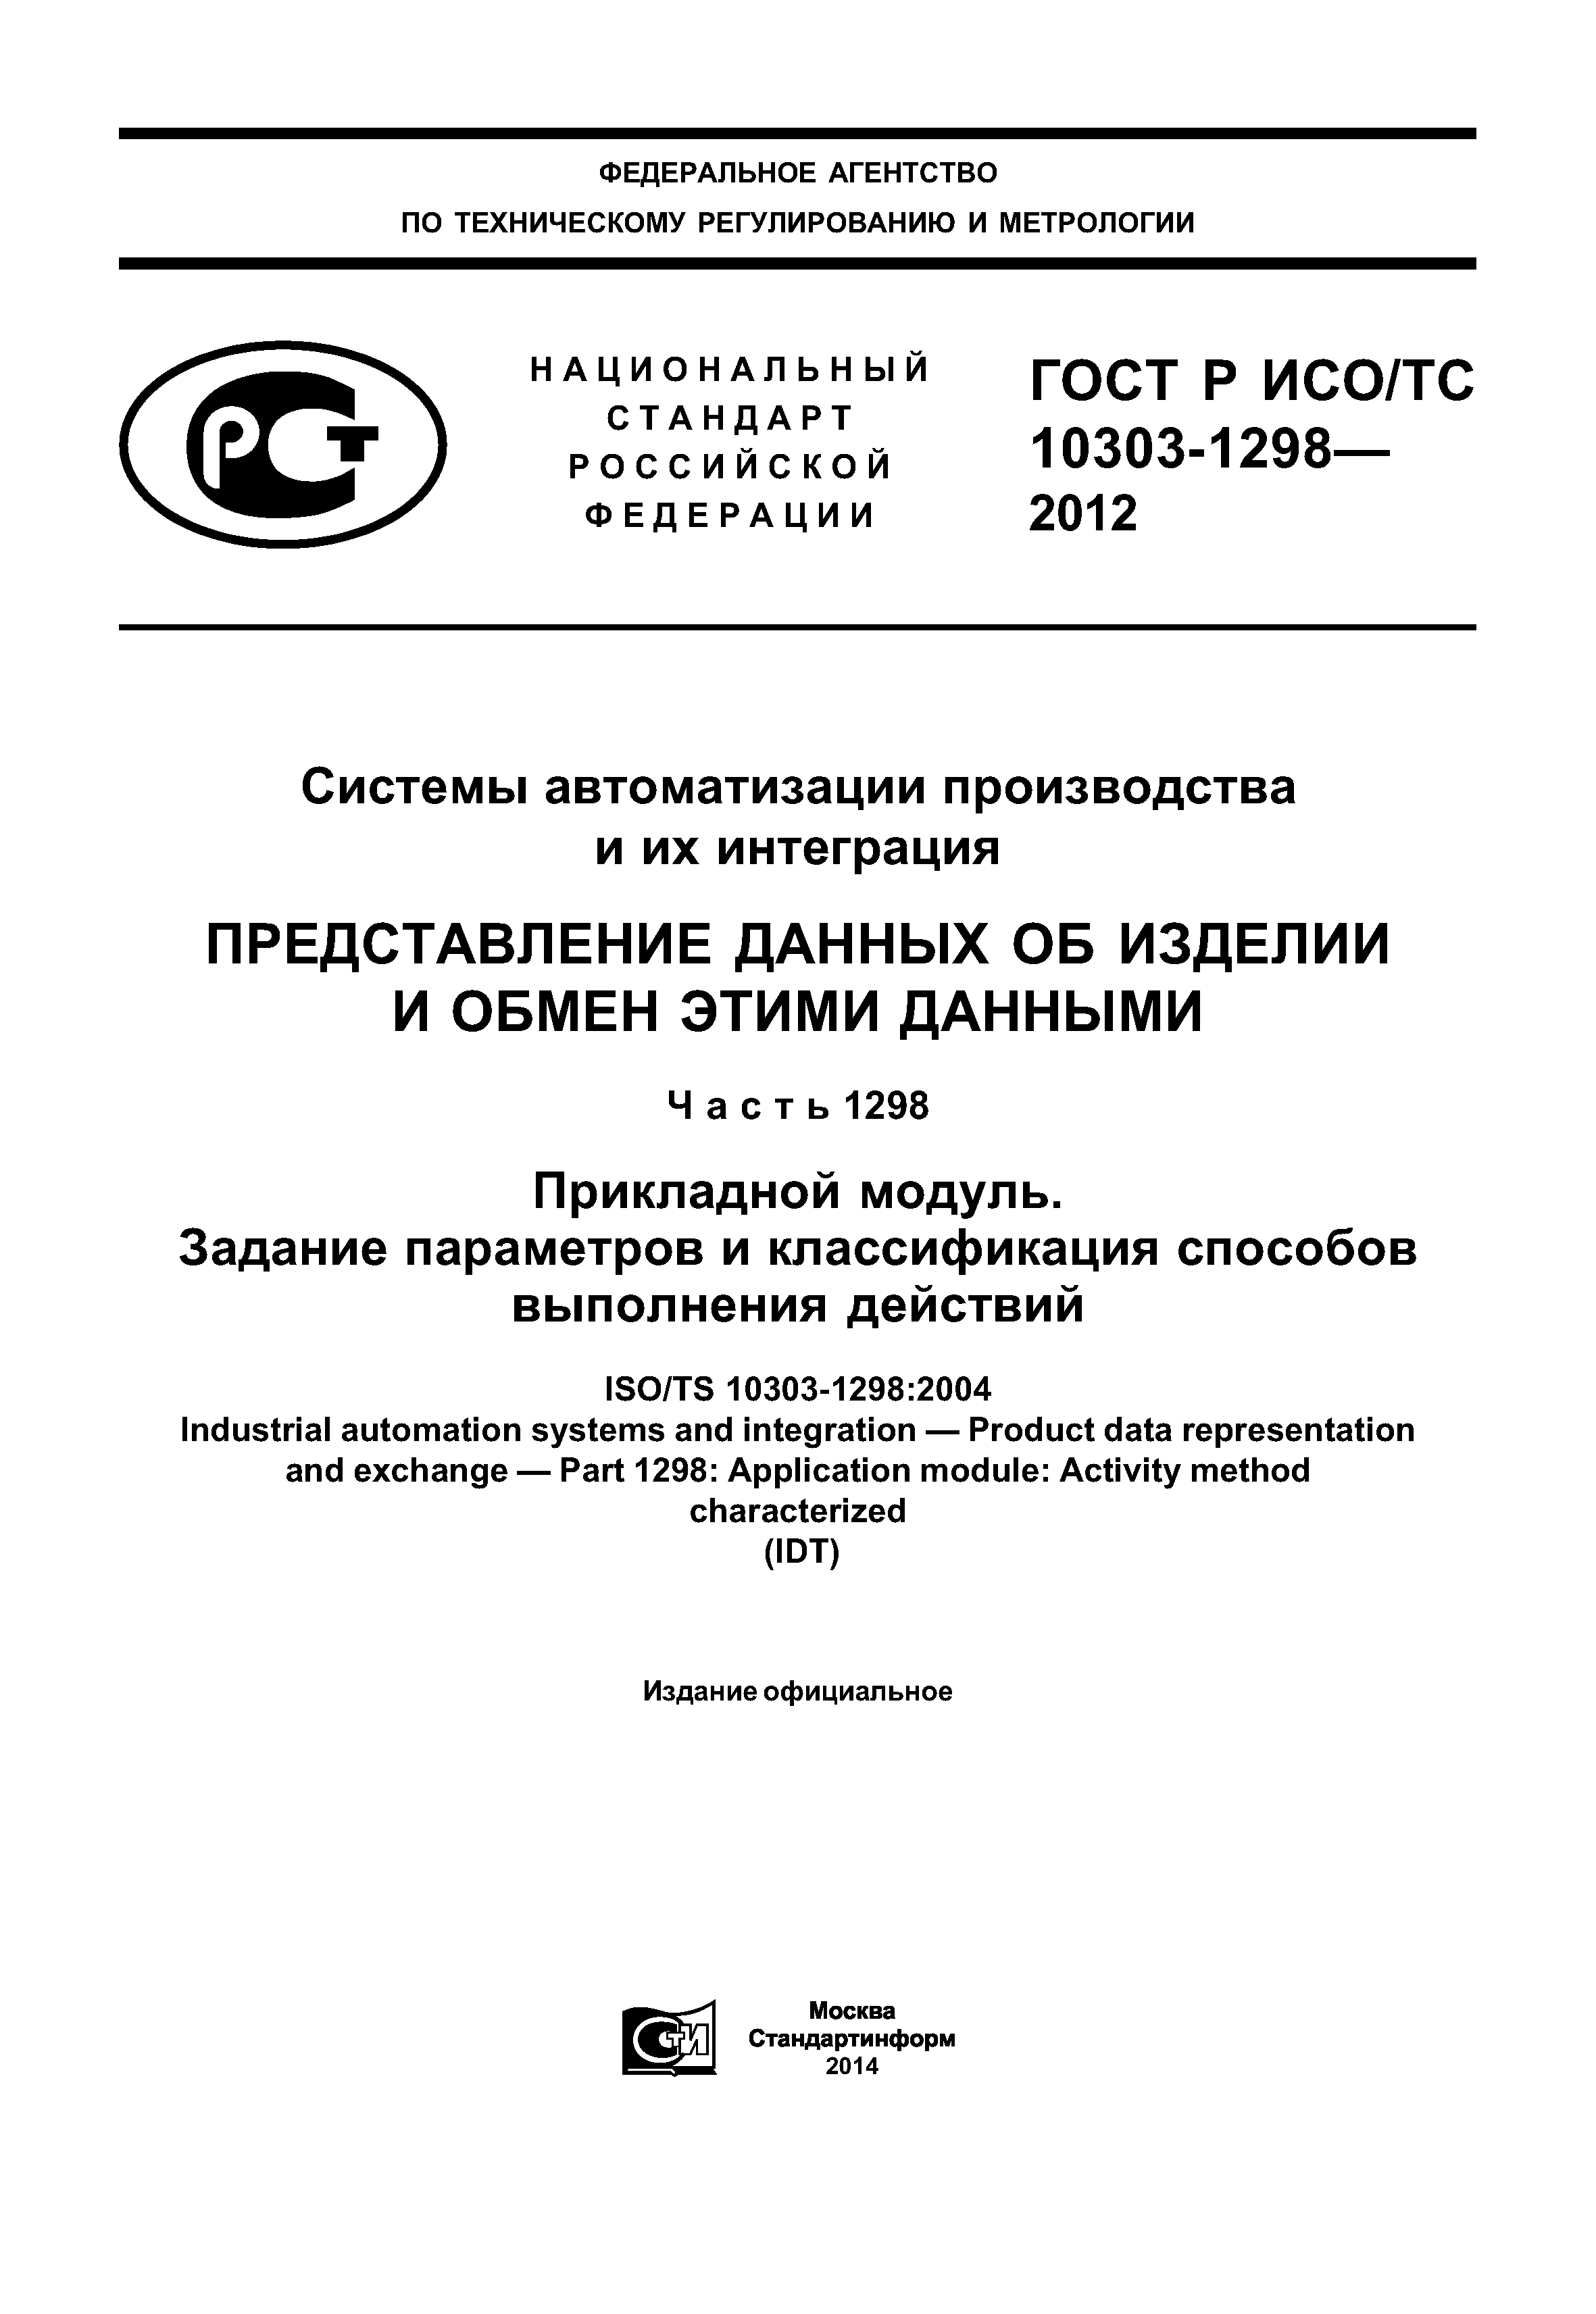 ГОСТ Р ИСО/ТС 10303-1298-2012